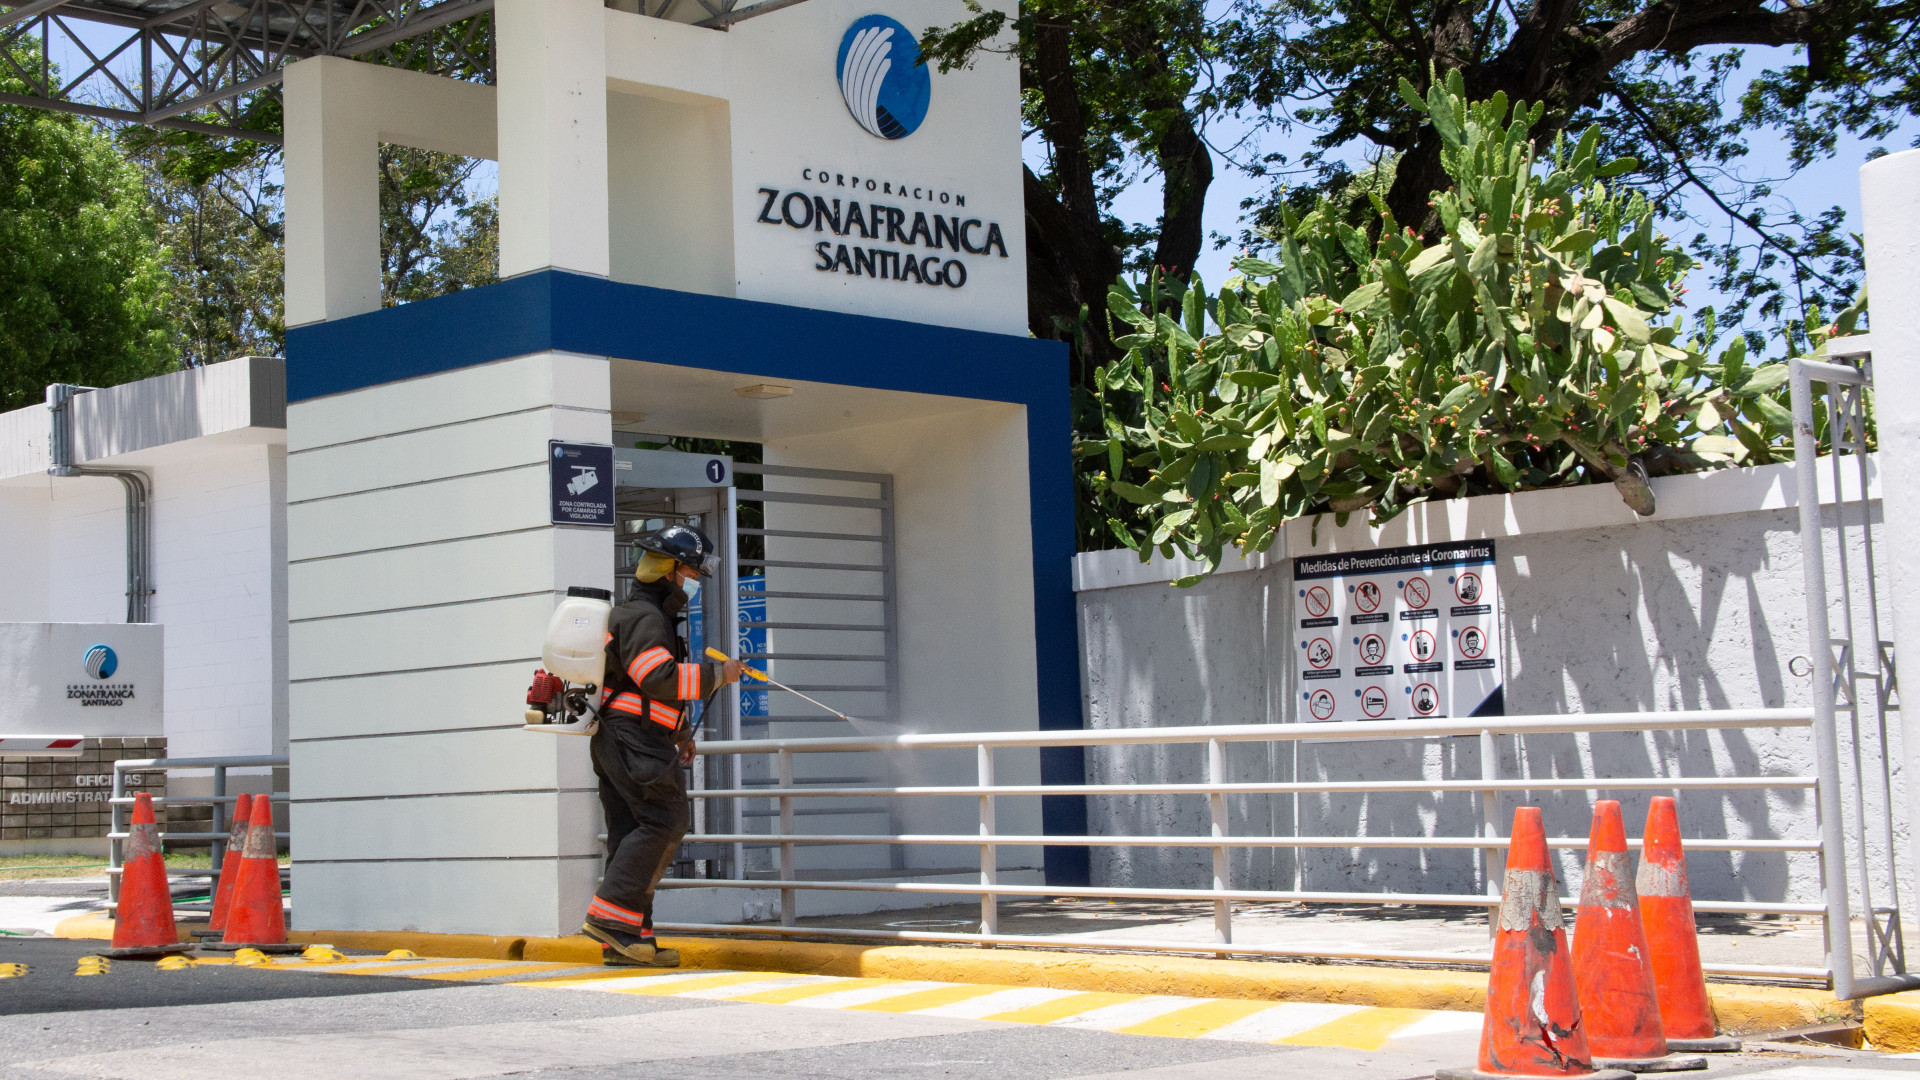 REPÚBLICA DOMINICANA: Unión y limpieza para enfrentar al coronavirus